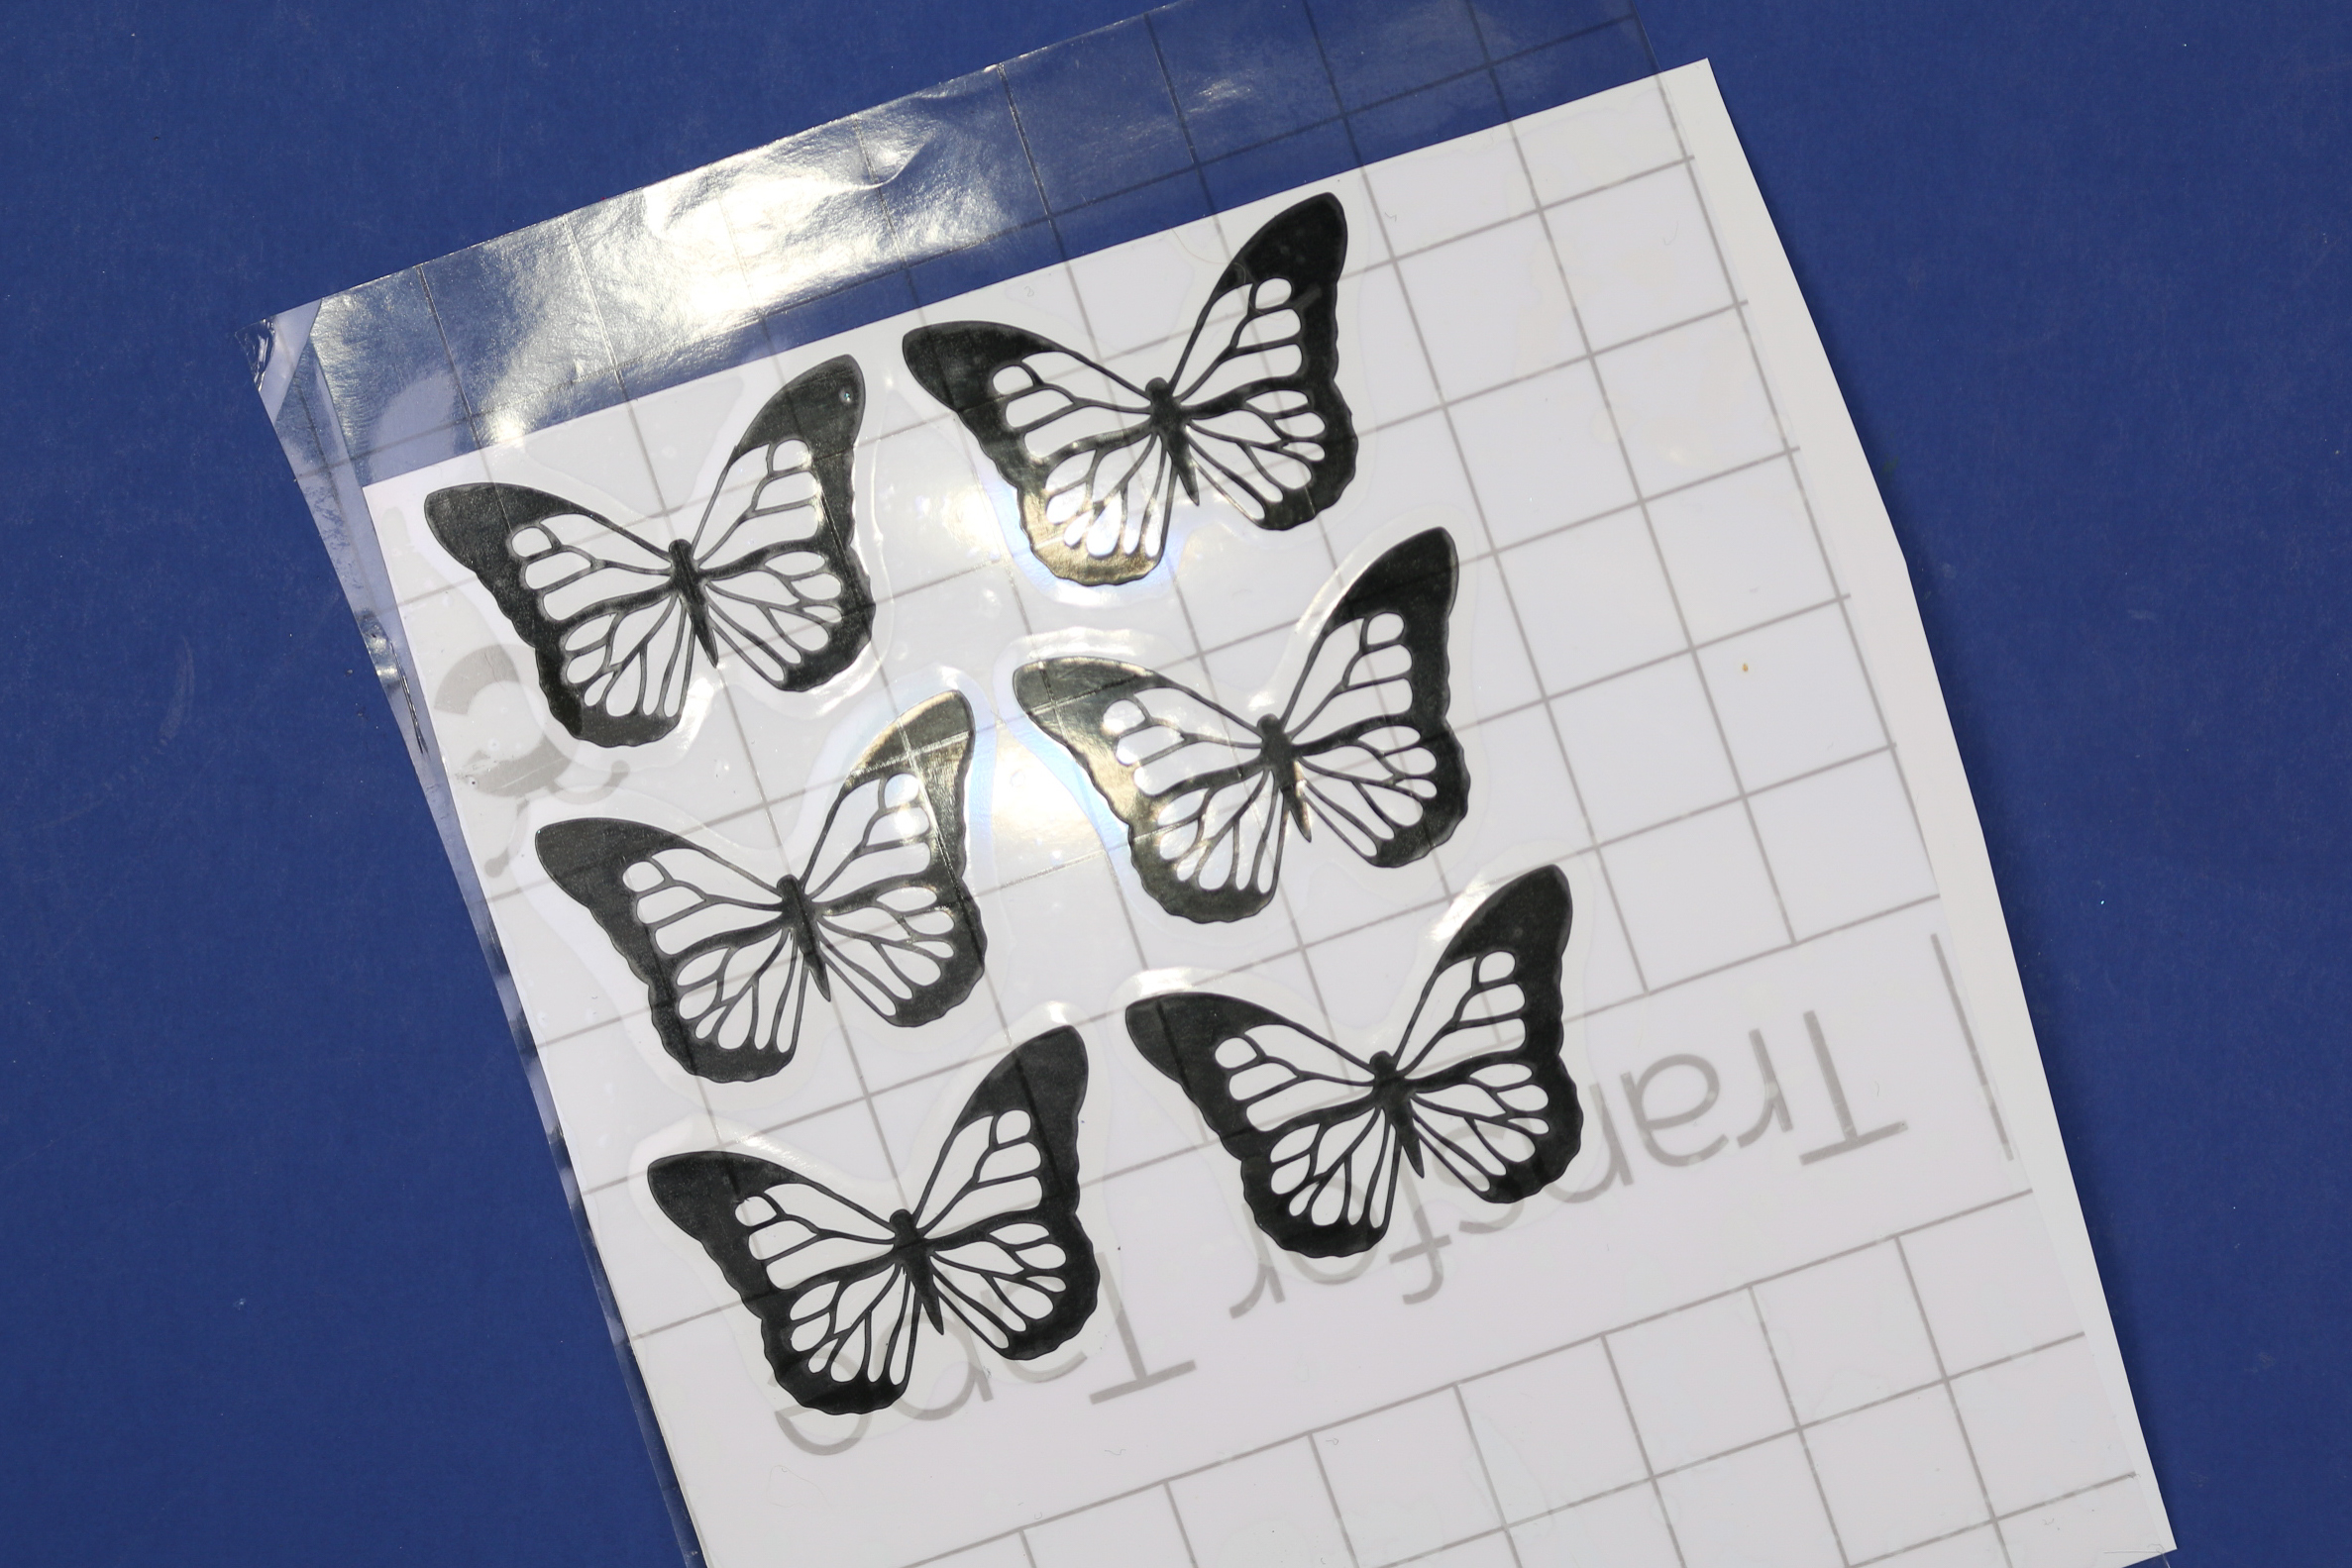 transfer tape applied to vinyl butterflies